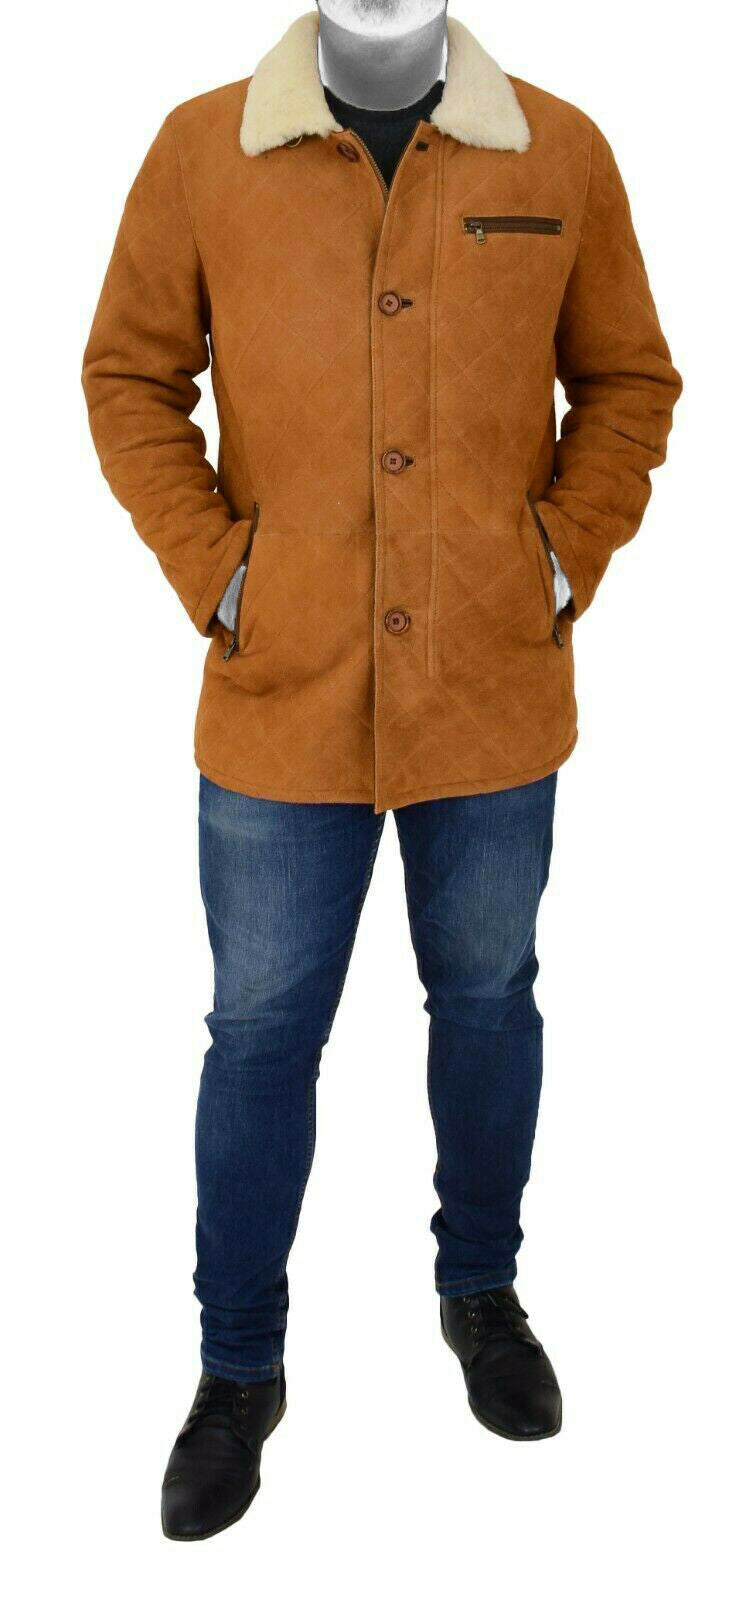 Spine Spark Men's Brown Soft Suede Leather Shearling Coat Jacket